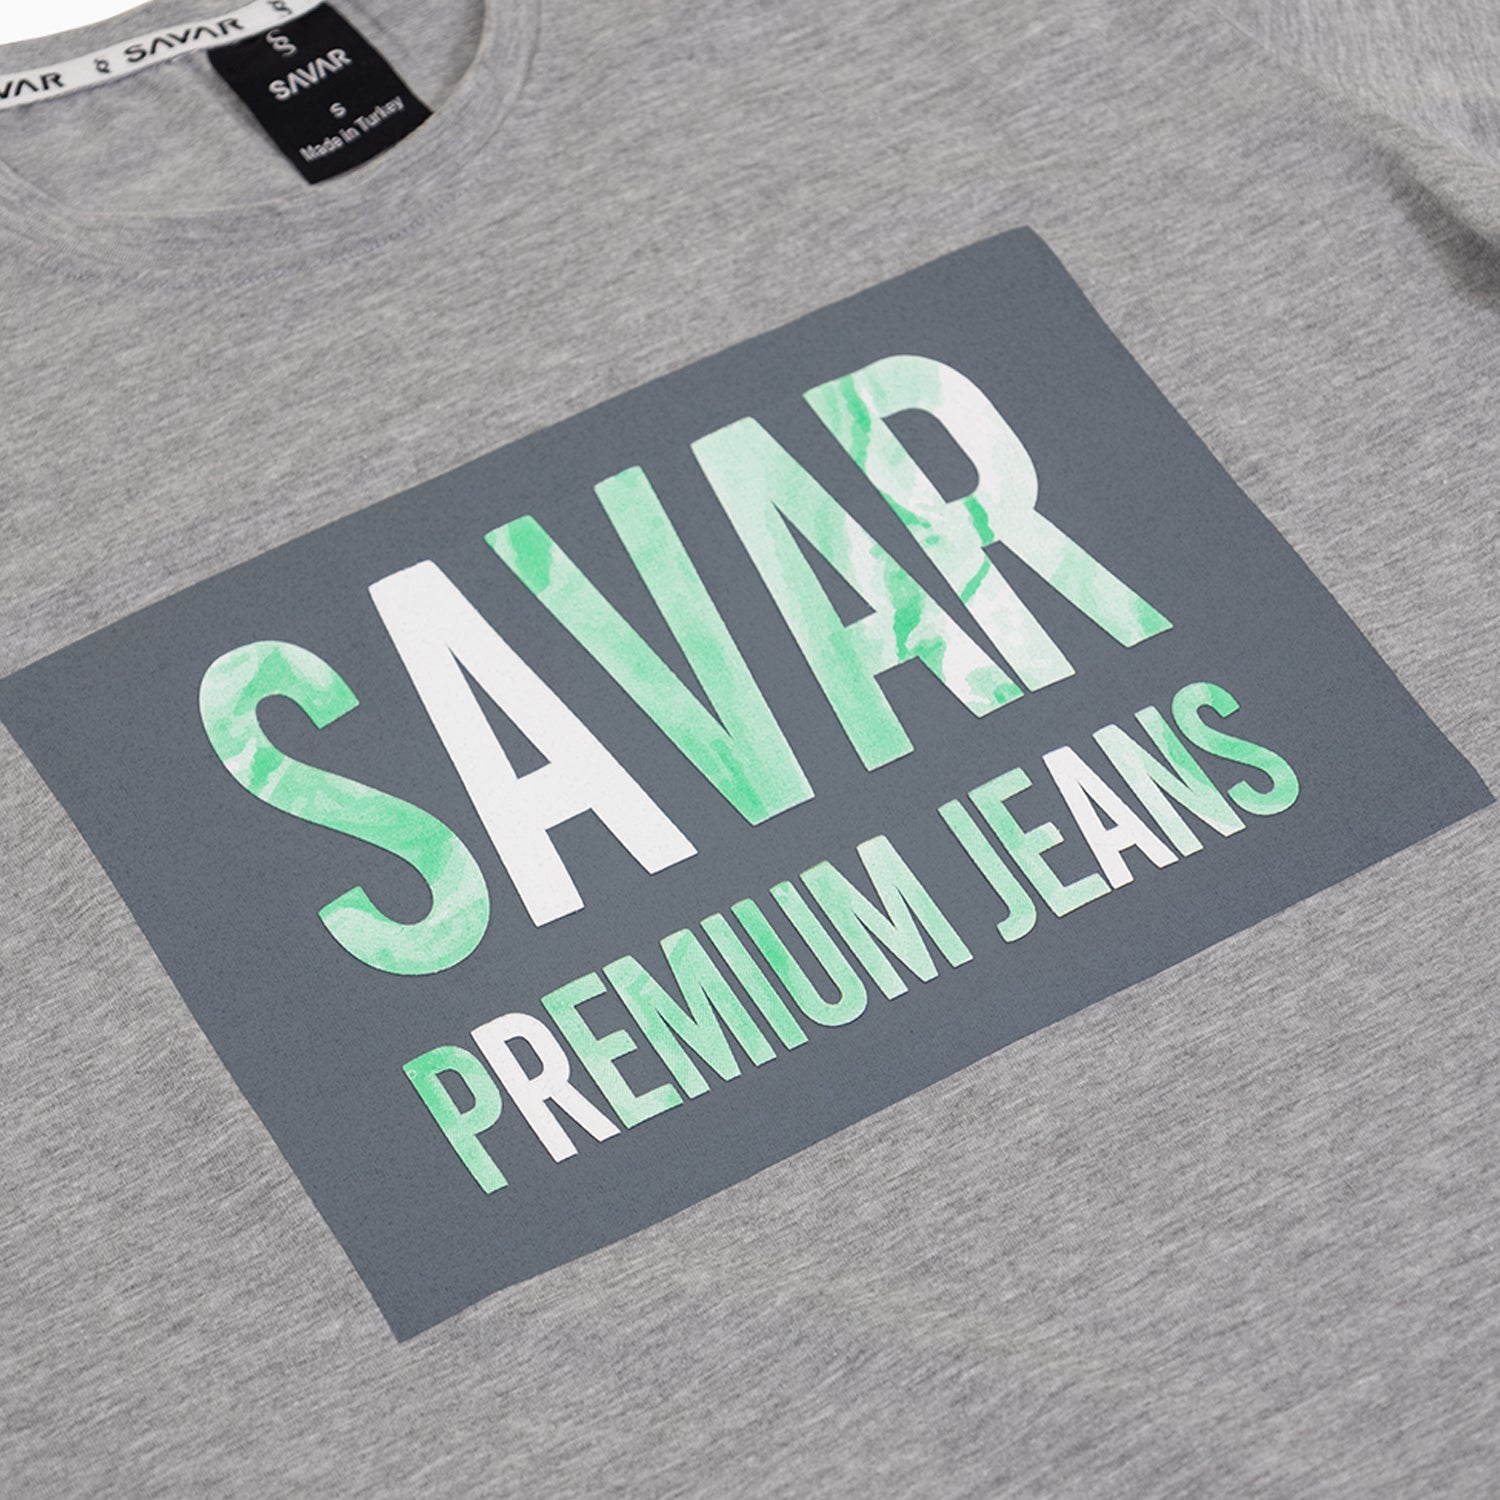 savar-mens-military-premium-printed-grey-t-shirt-st217-063